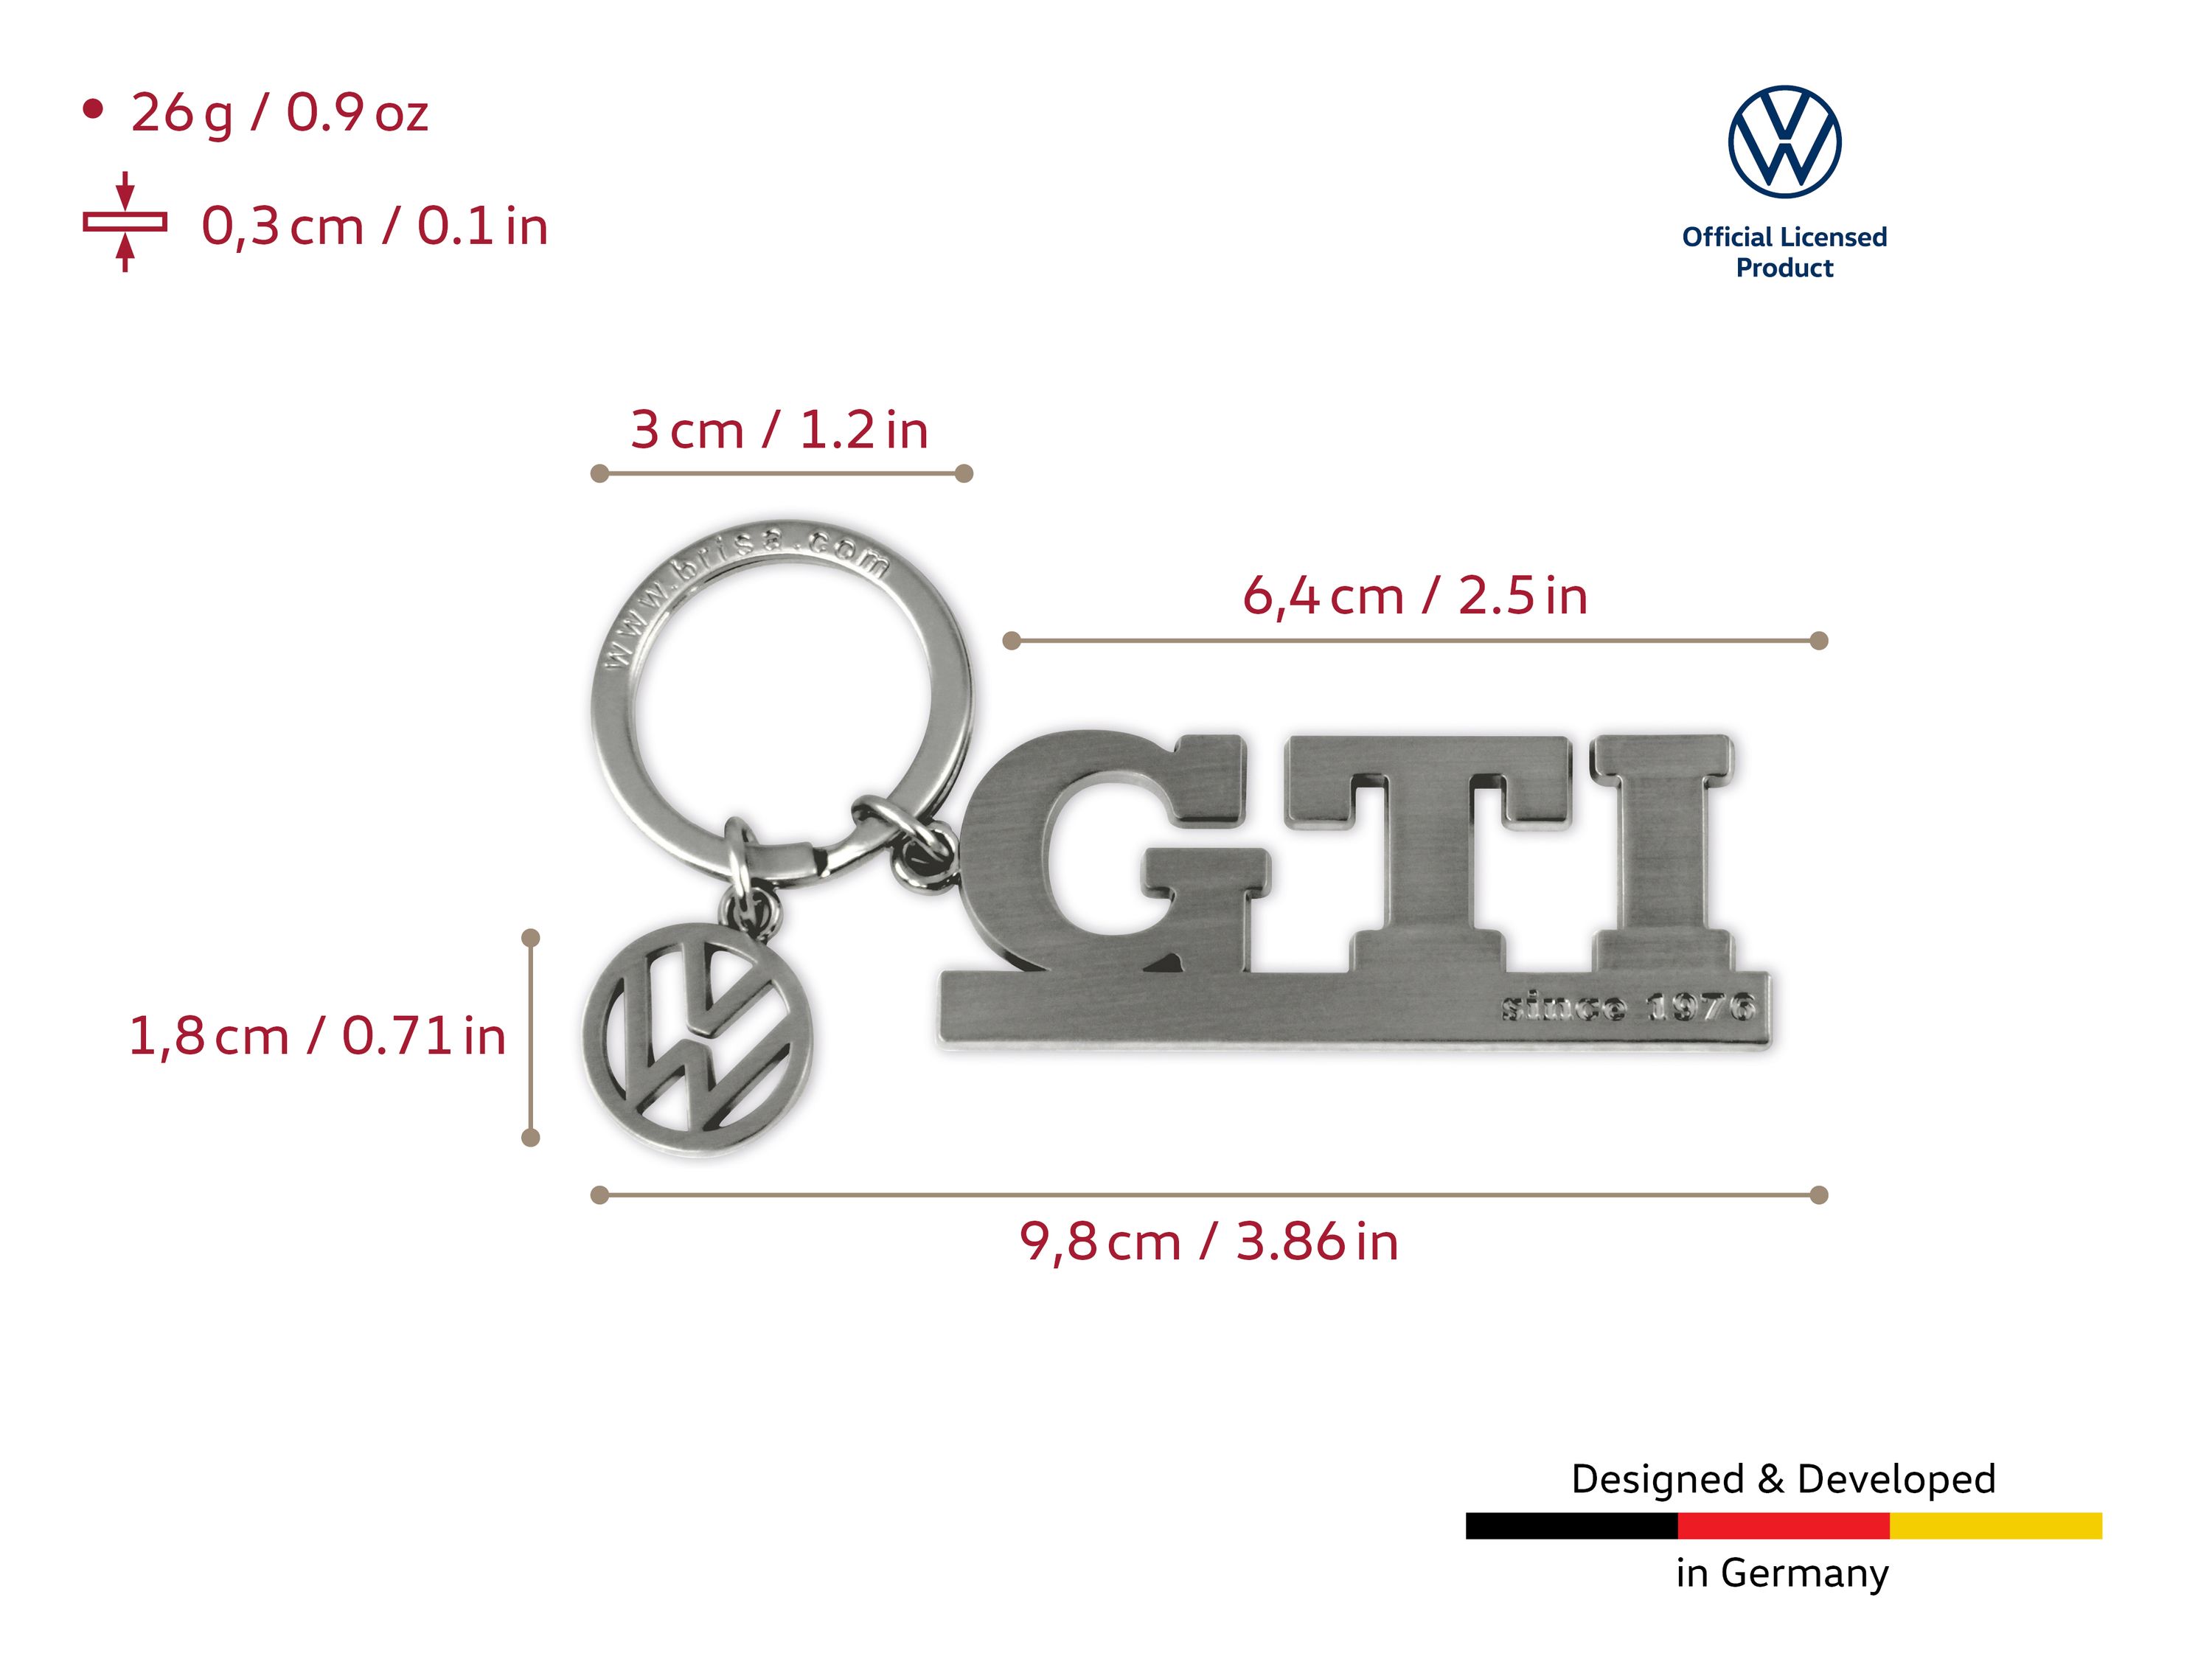 Portachiavi VW GTI con charm